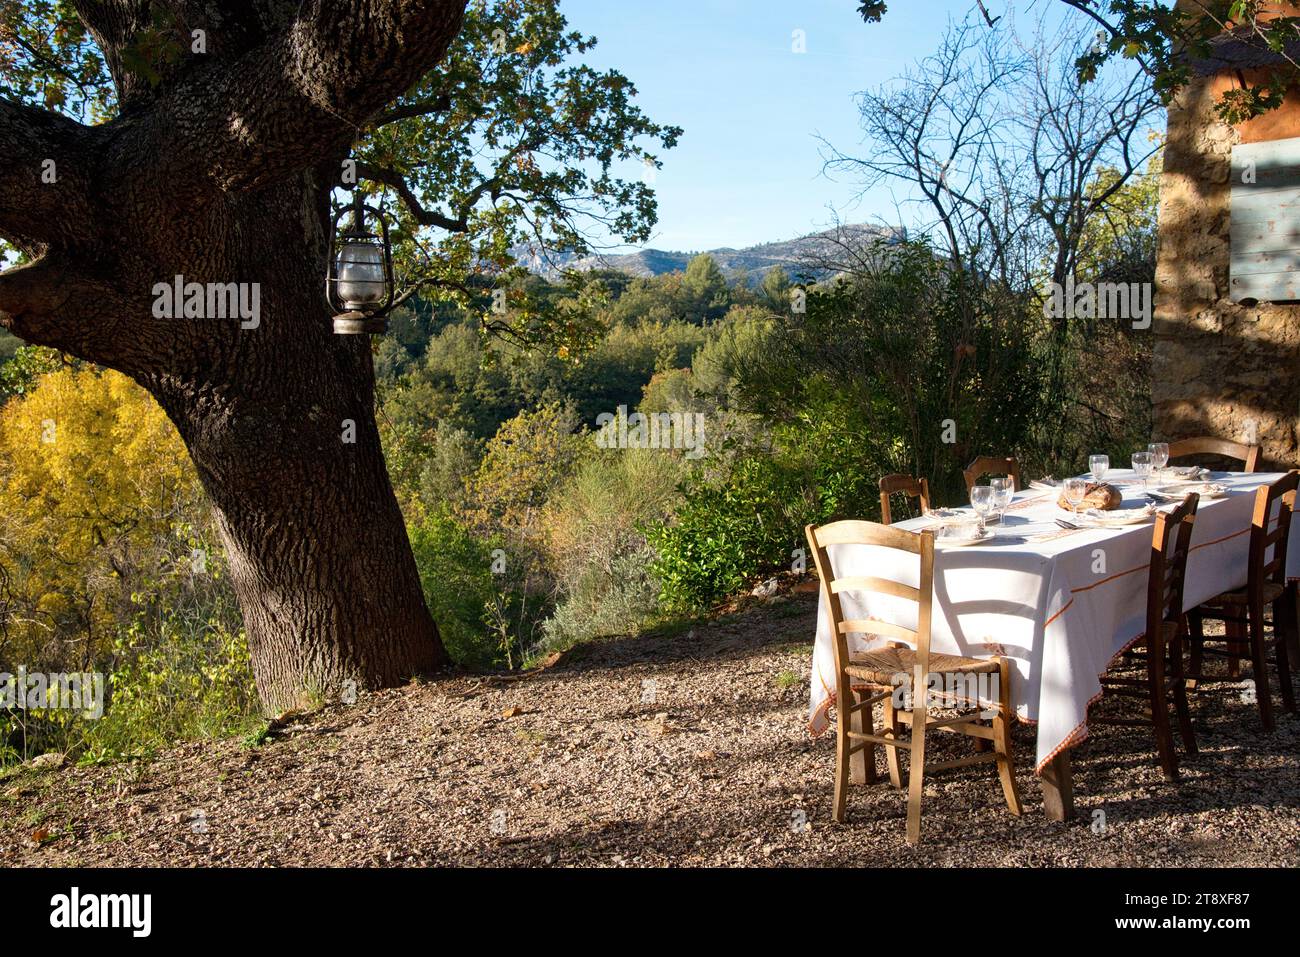 une table à manger habillée, avec assiettes, couverts verres et miche de pain, sur une terrasse à l'heure du souper, avec en arrière plan les collines Banque D'Images